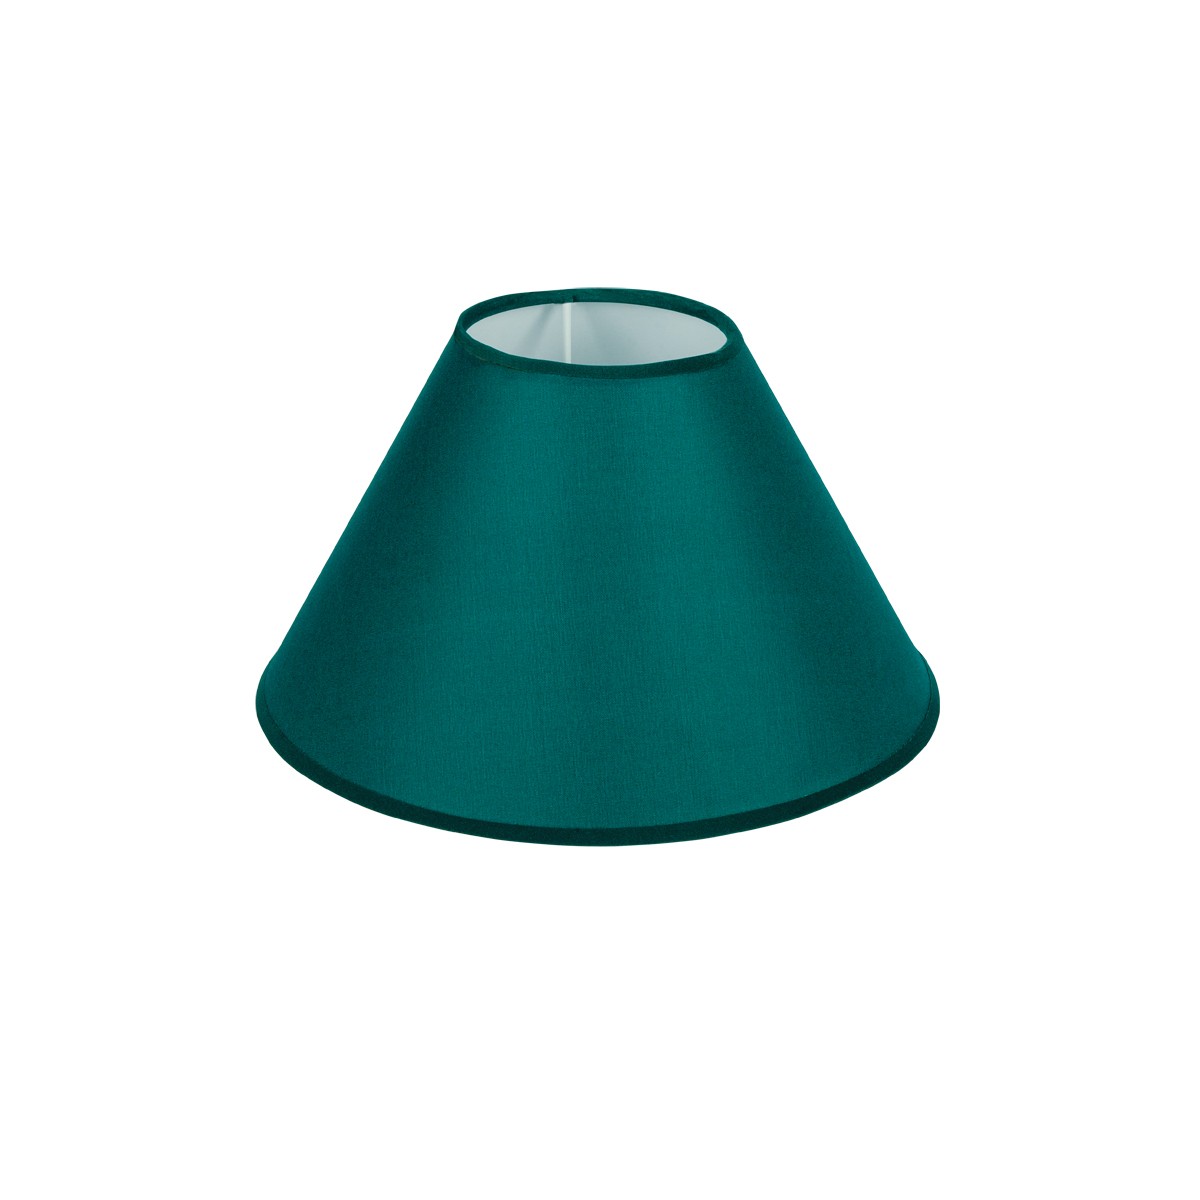 Καπέλο Μονόχρωμο Στρογγυλό Φ25cm Κάτω Πλευρά -Σε  Πράσινο Χρώμα        VK/E27/E14/D25/GR